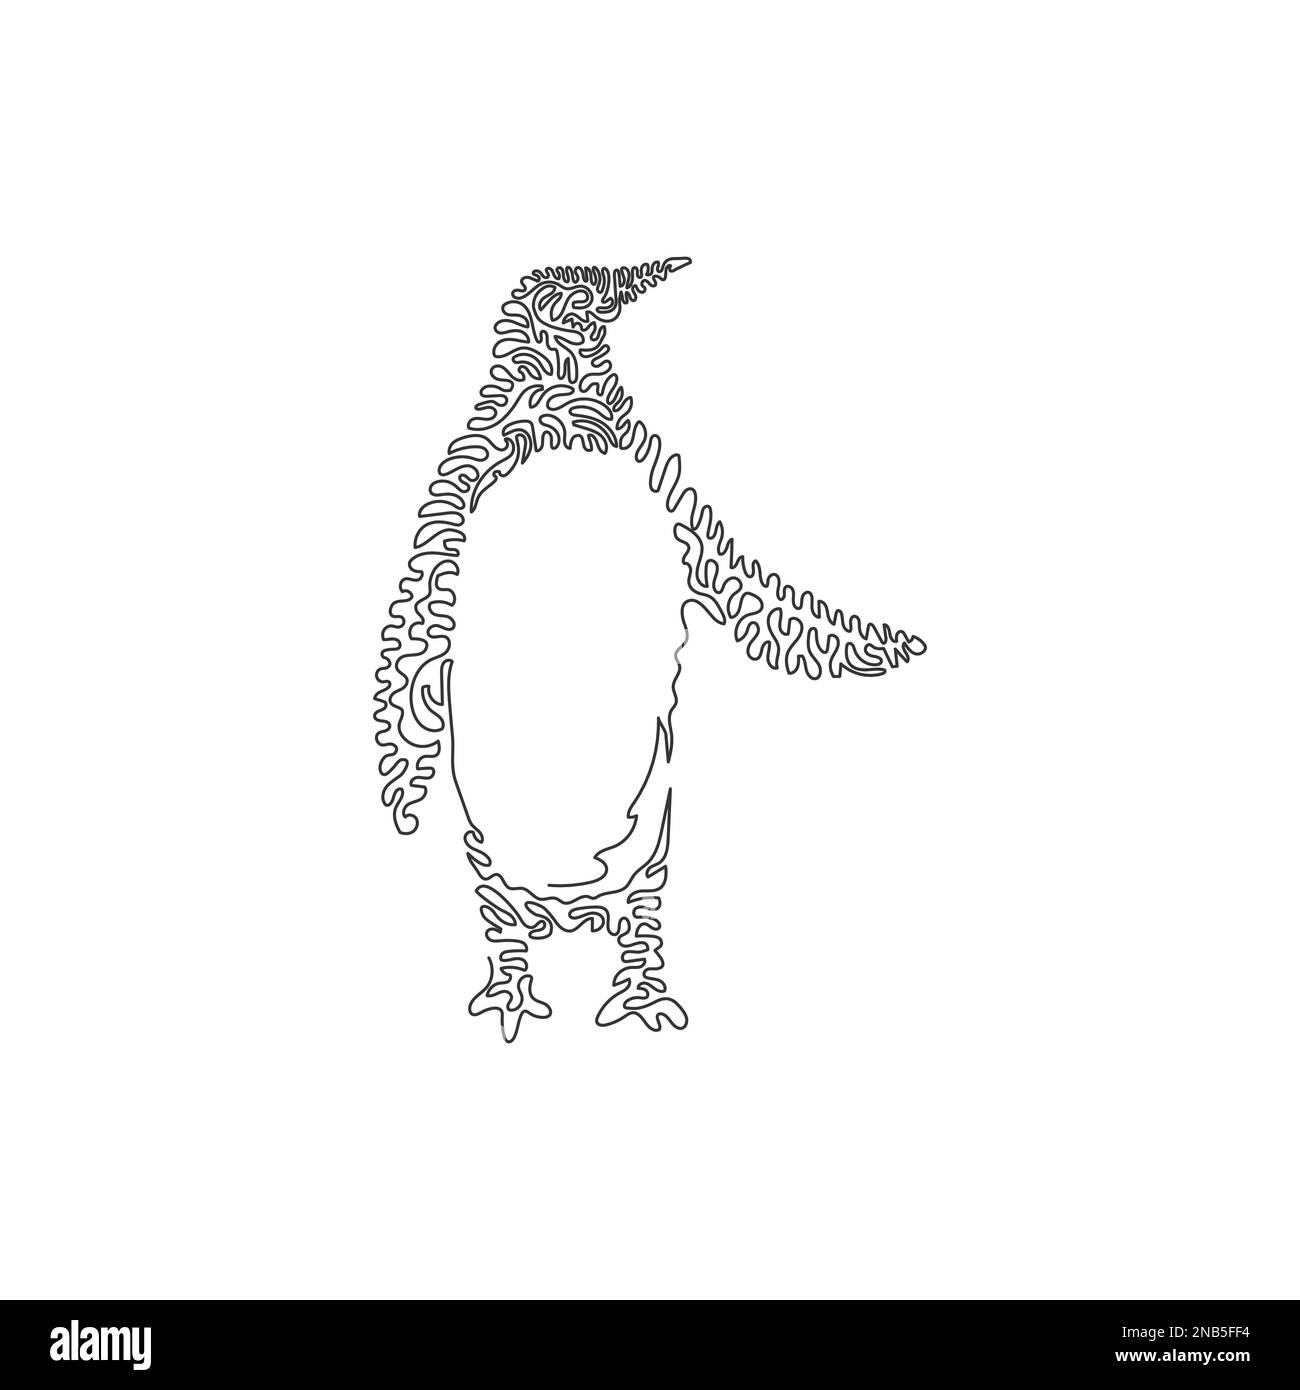 Eine einzelne geschweifte eine Linie zeichnen abstrakte Kunst. Pinguinflossen wie Ruder. Durchgehende Linien zeichnen grafische Designvektordarstellung von stumpfem Pinguin Stock Vektor